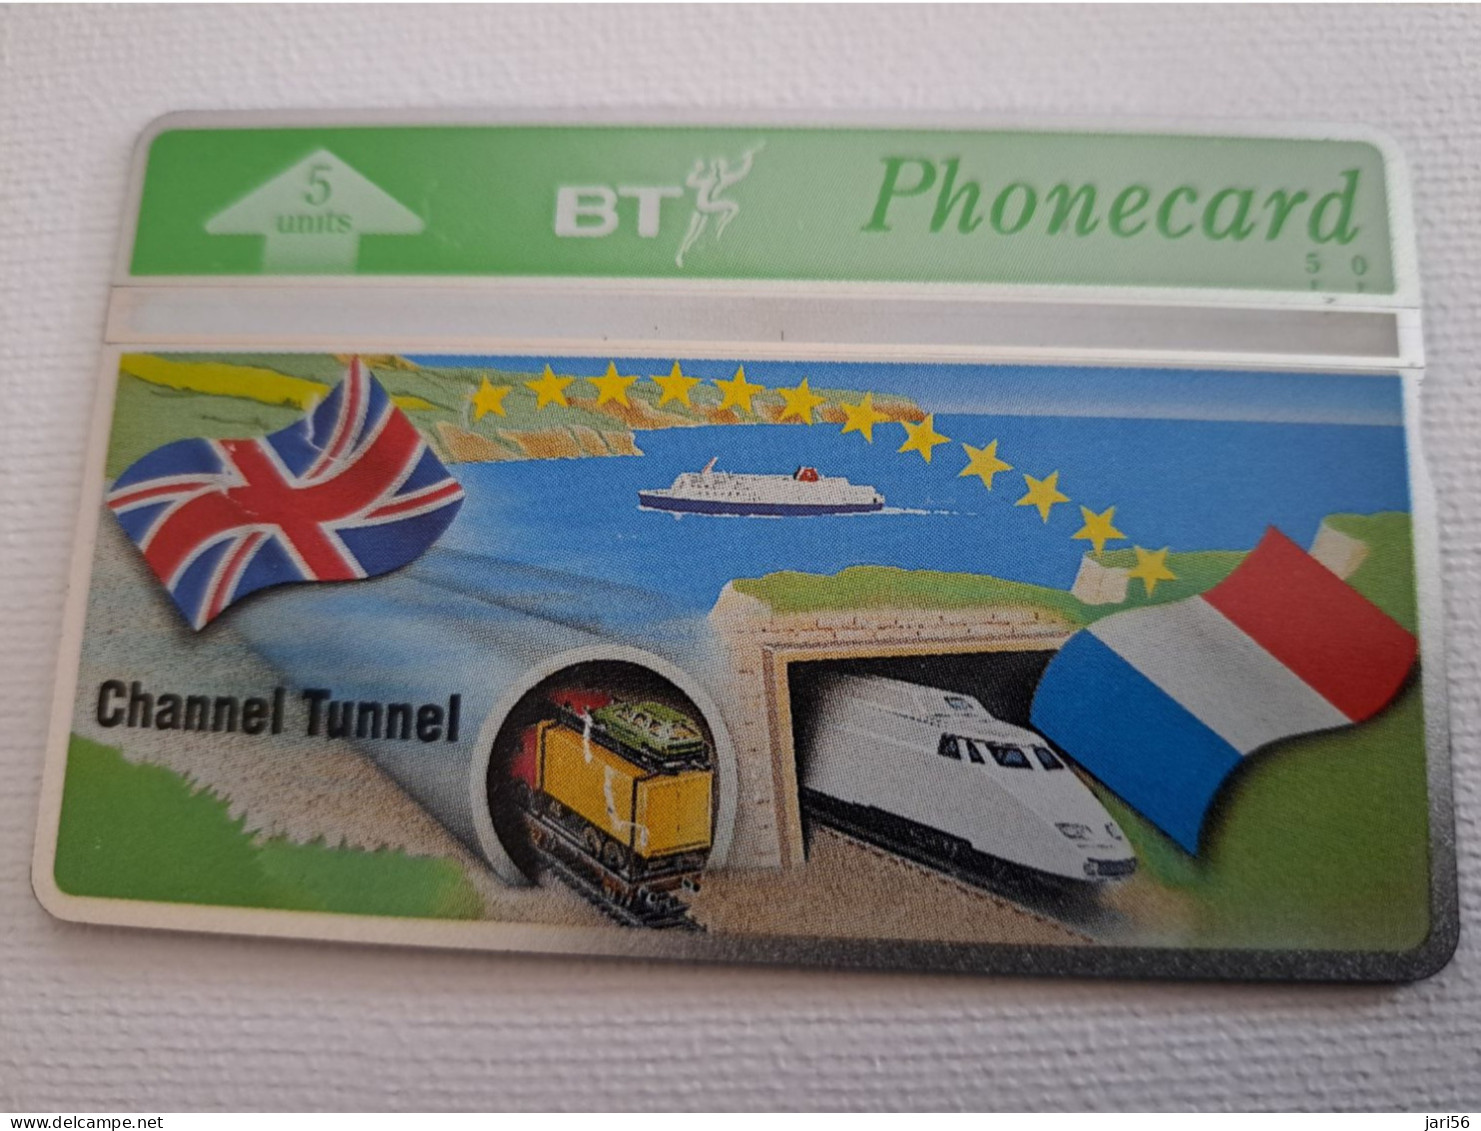 GREAT BRETAGNE/ L & G  5 UNITS / CHANNEL TUNNEL/ TGV TRAIN/   / 405B /  MINT CARD **16576** - BT Übersee